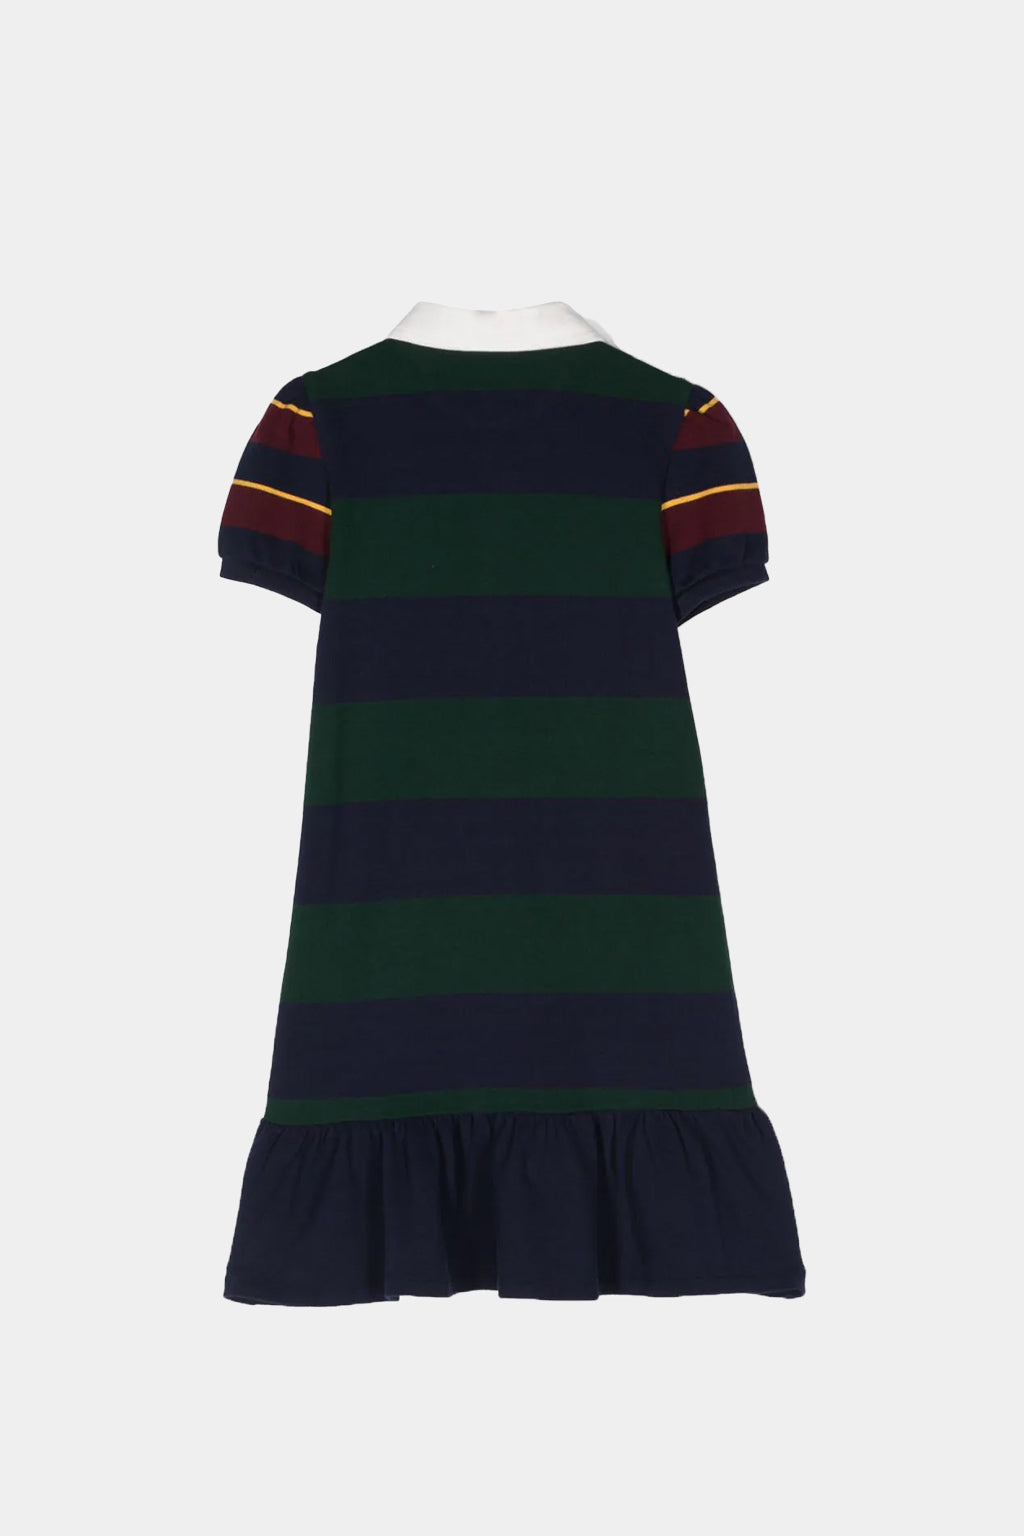 Ralph Lauren - Striped Rugby Dress